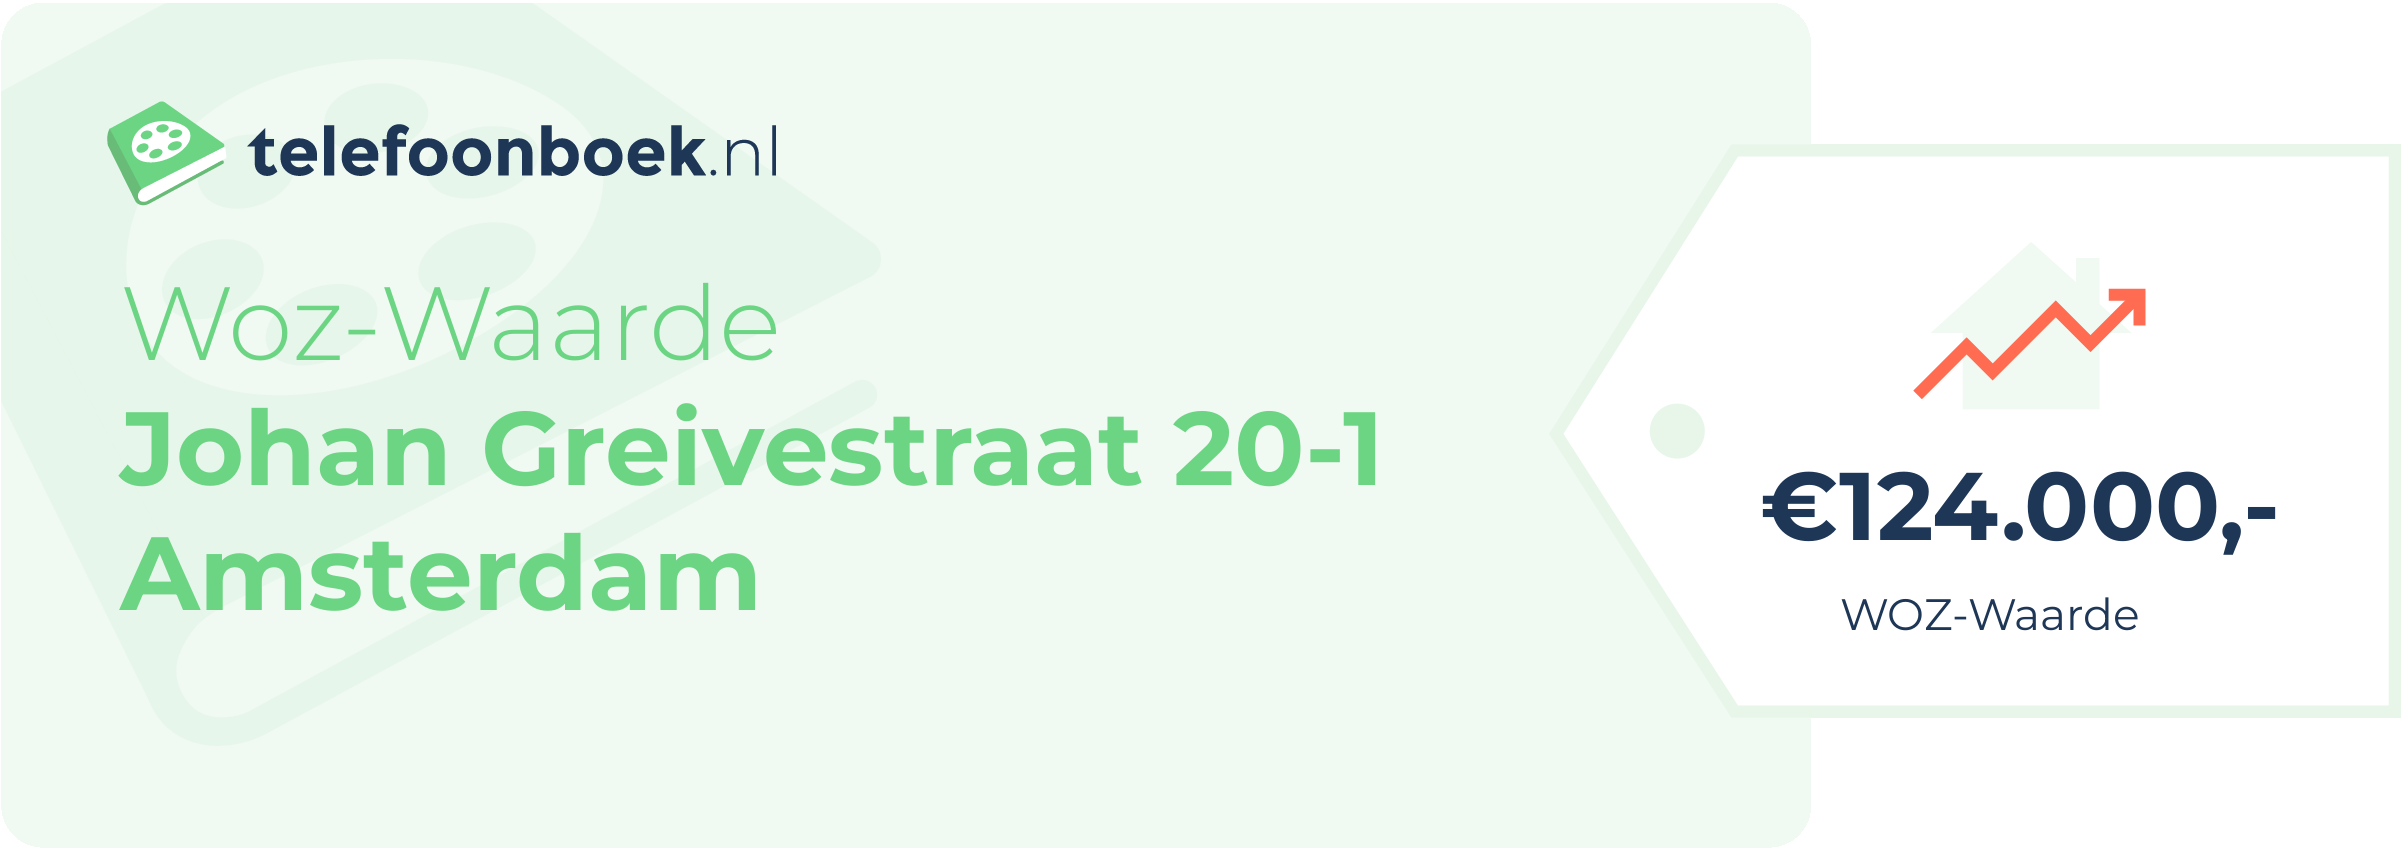 WOZ-waarde Johan Greivestraat 20-1 Amsterdam